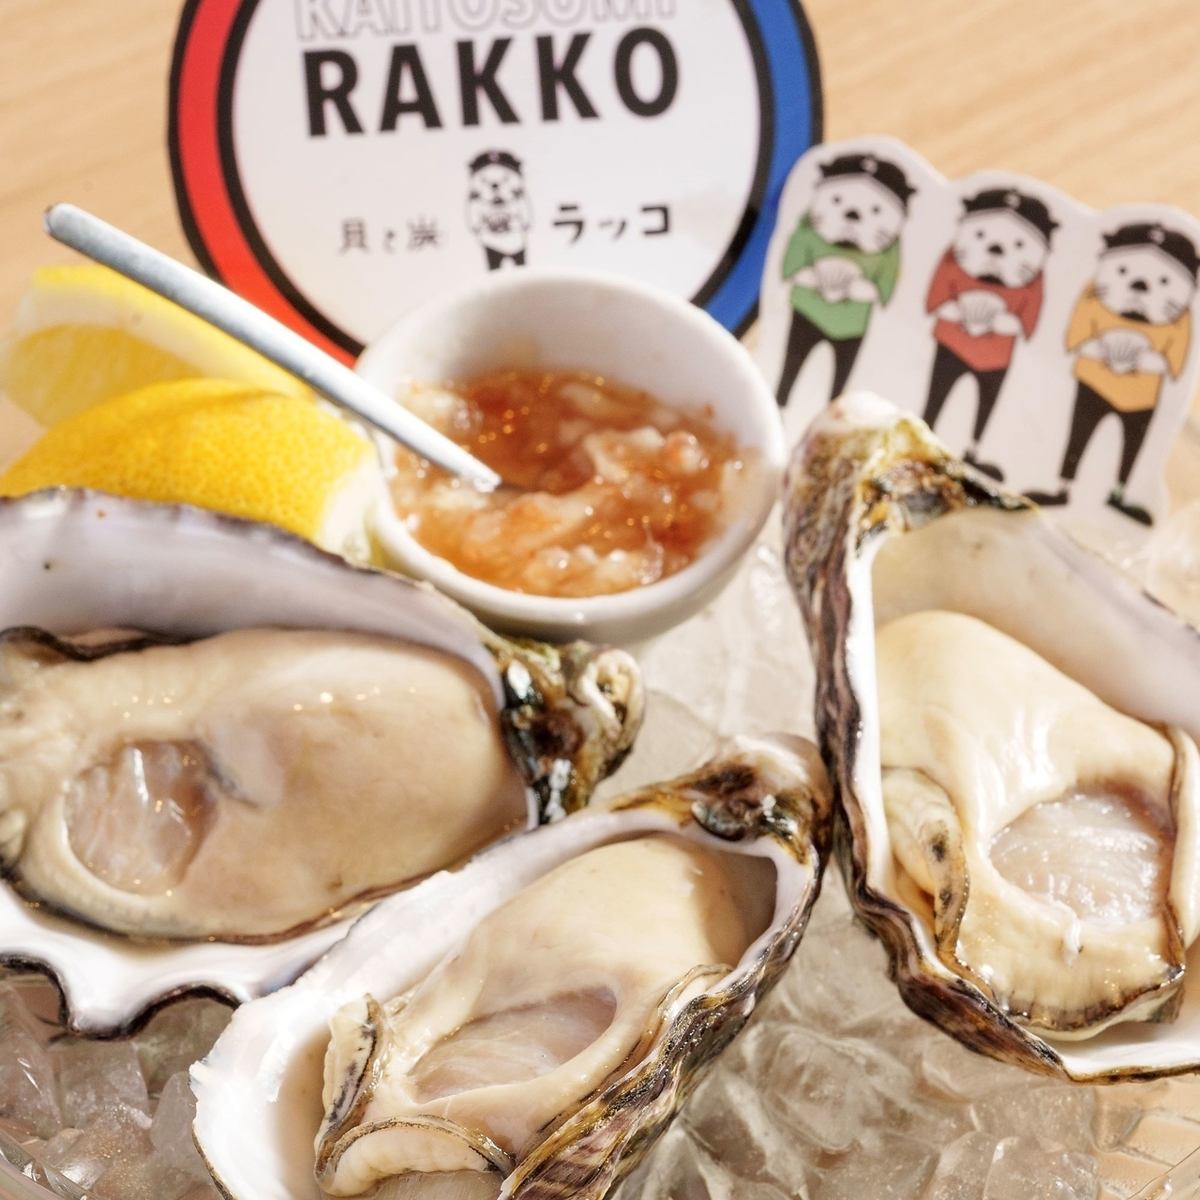 我们引以自豪的炭烤新鲜牡蛎！请在时尚的餐厅轻松享用海鲜。